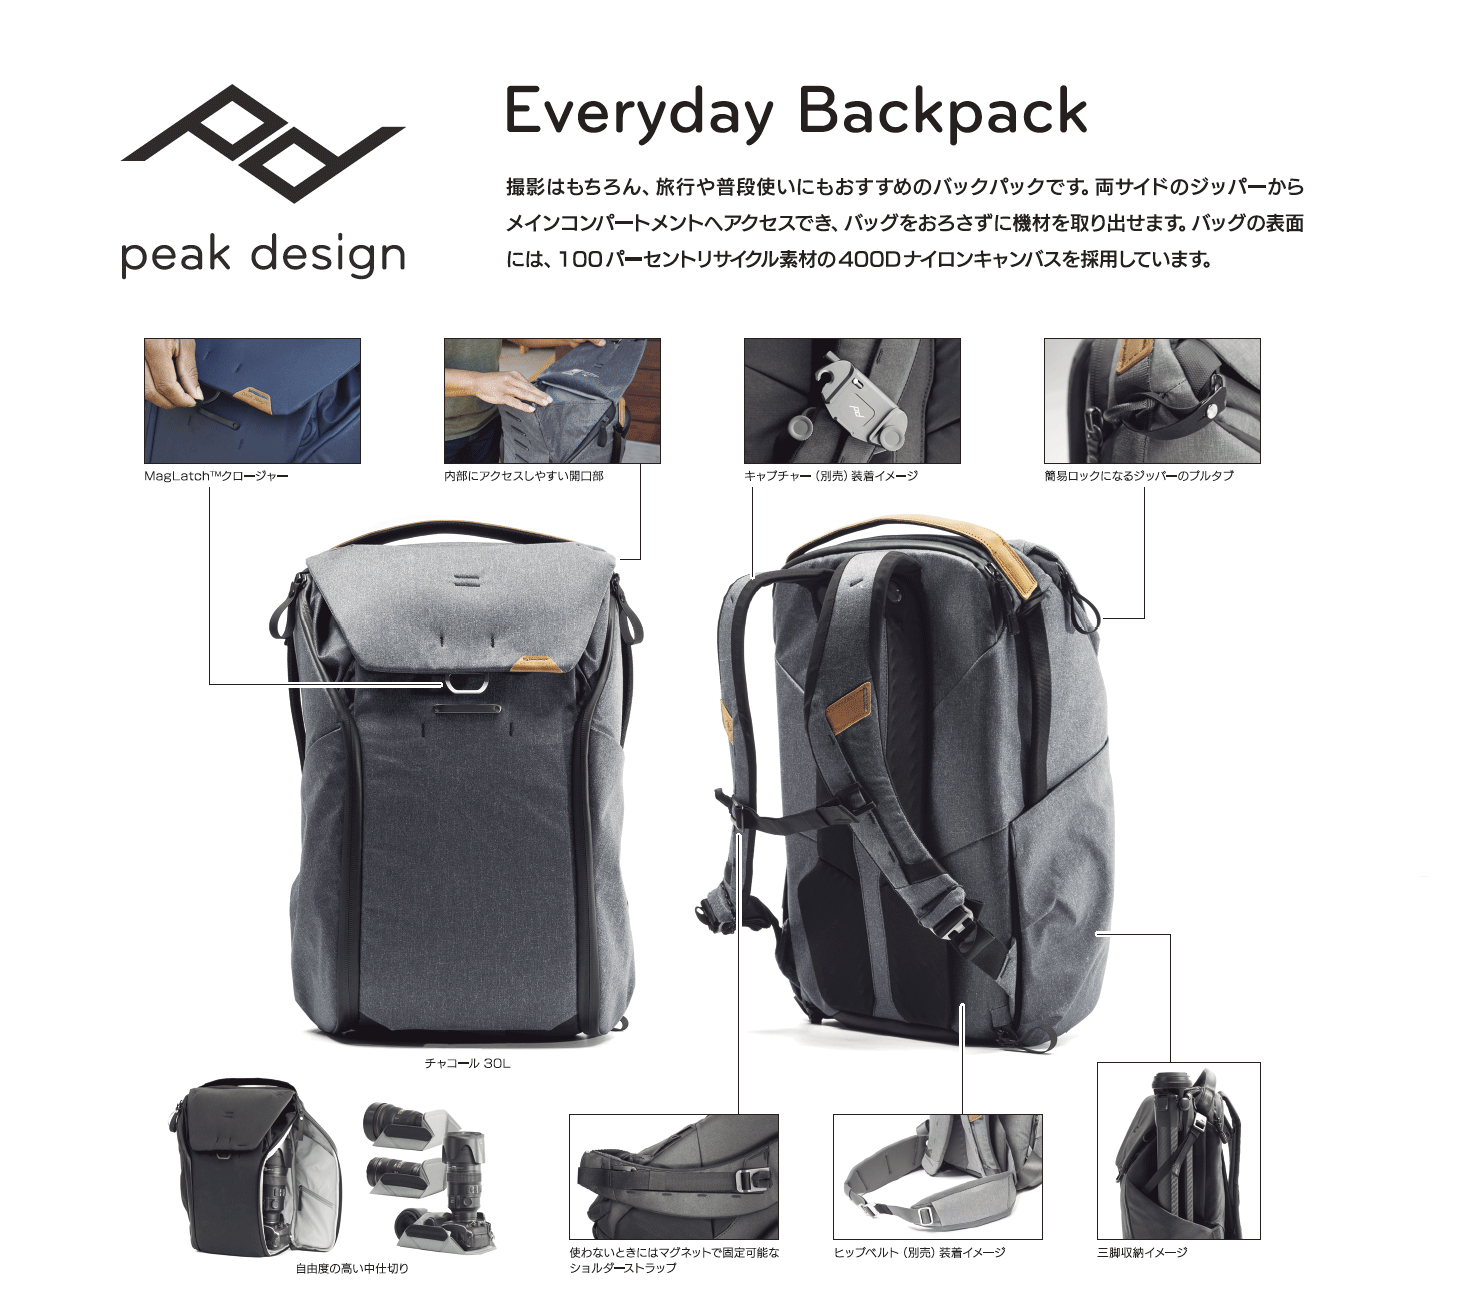 Peak Design EverydayBackpack | 銀一株式会社